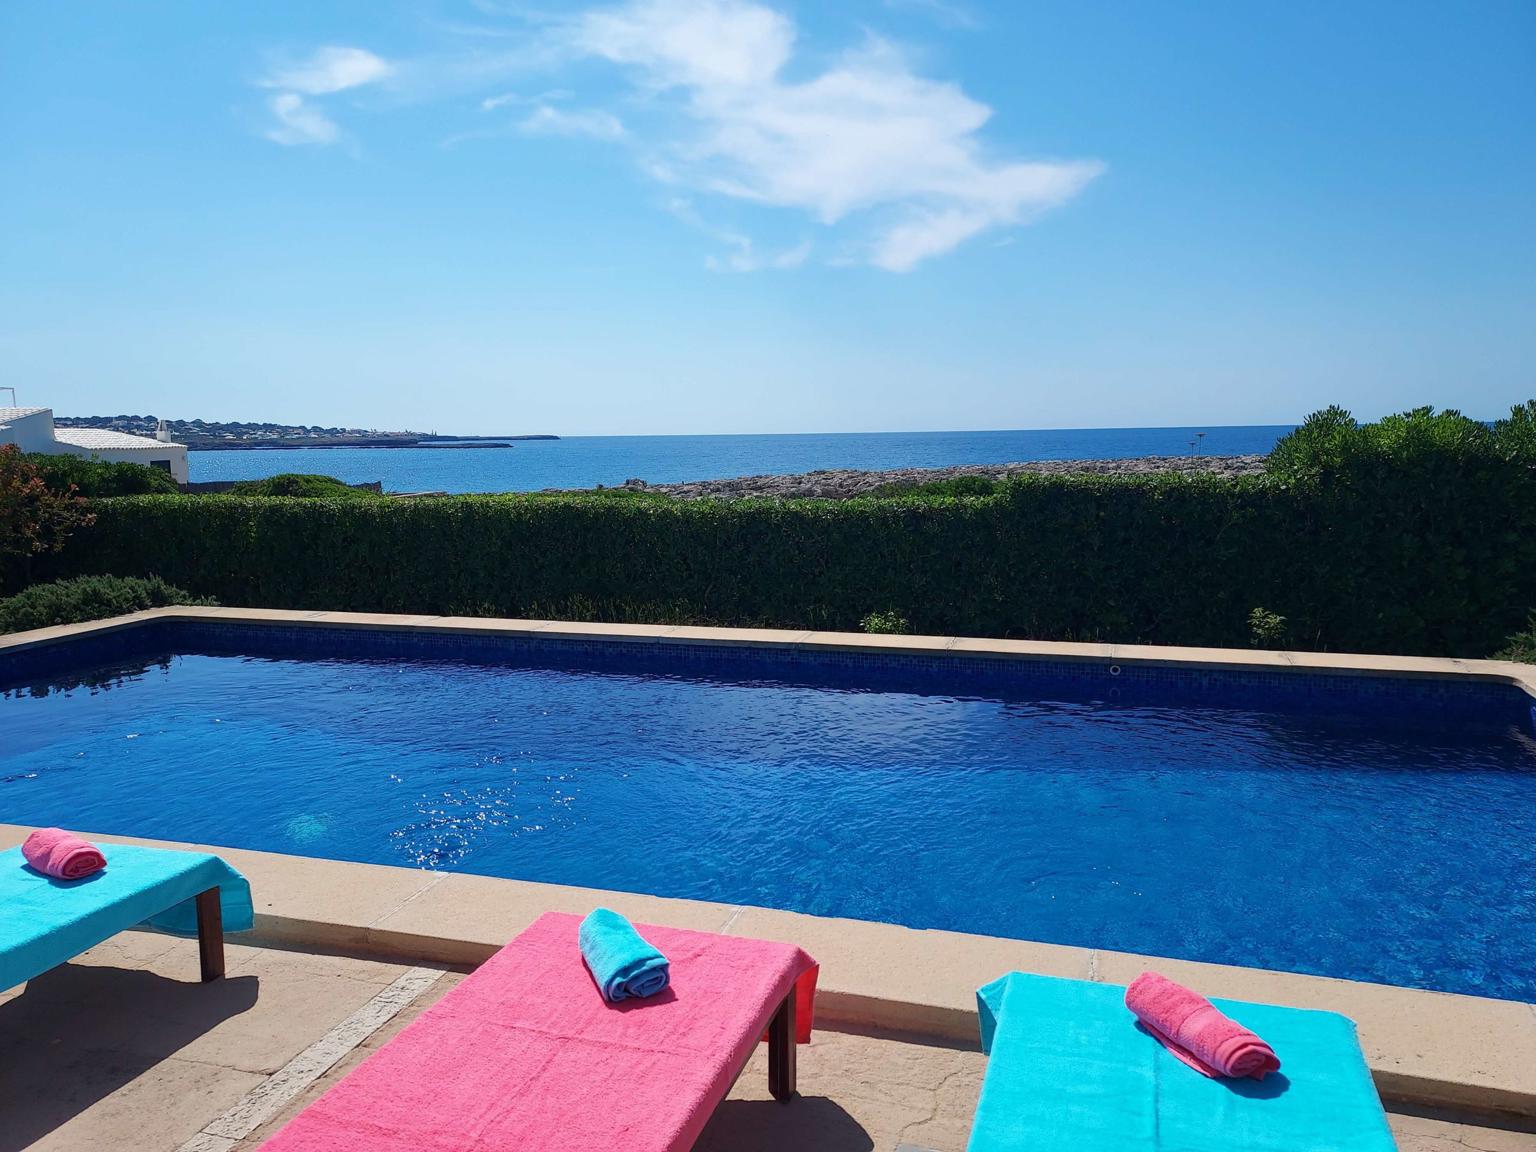 Villa Blau Mari - Vistas al mar desde la piscina - Chalet con piscina - Cap den Font - Sant Lluis - Menorca